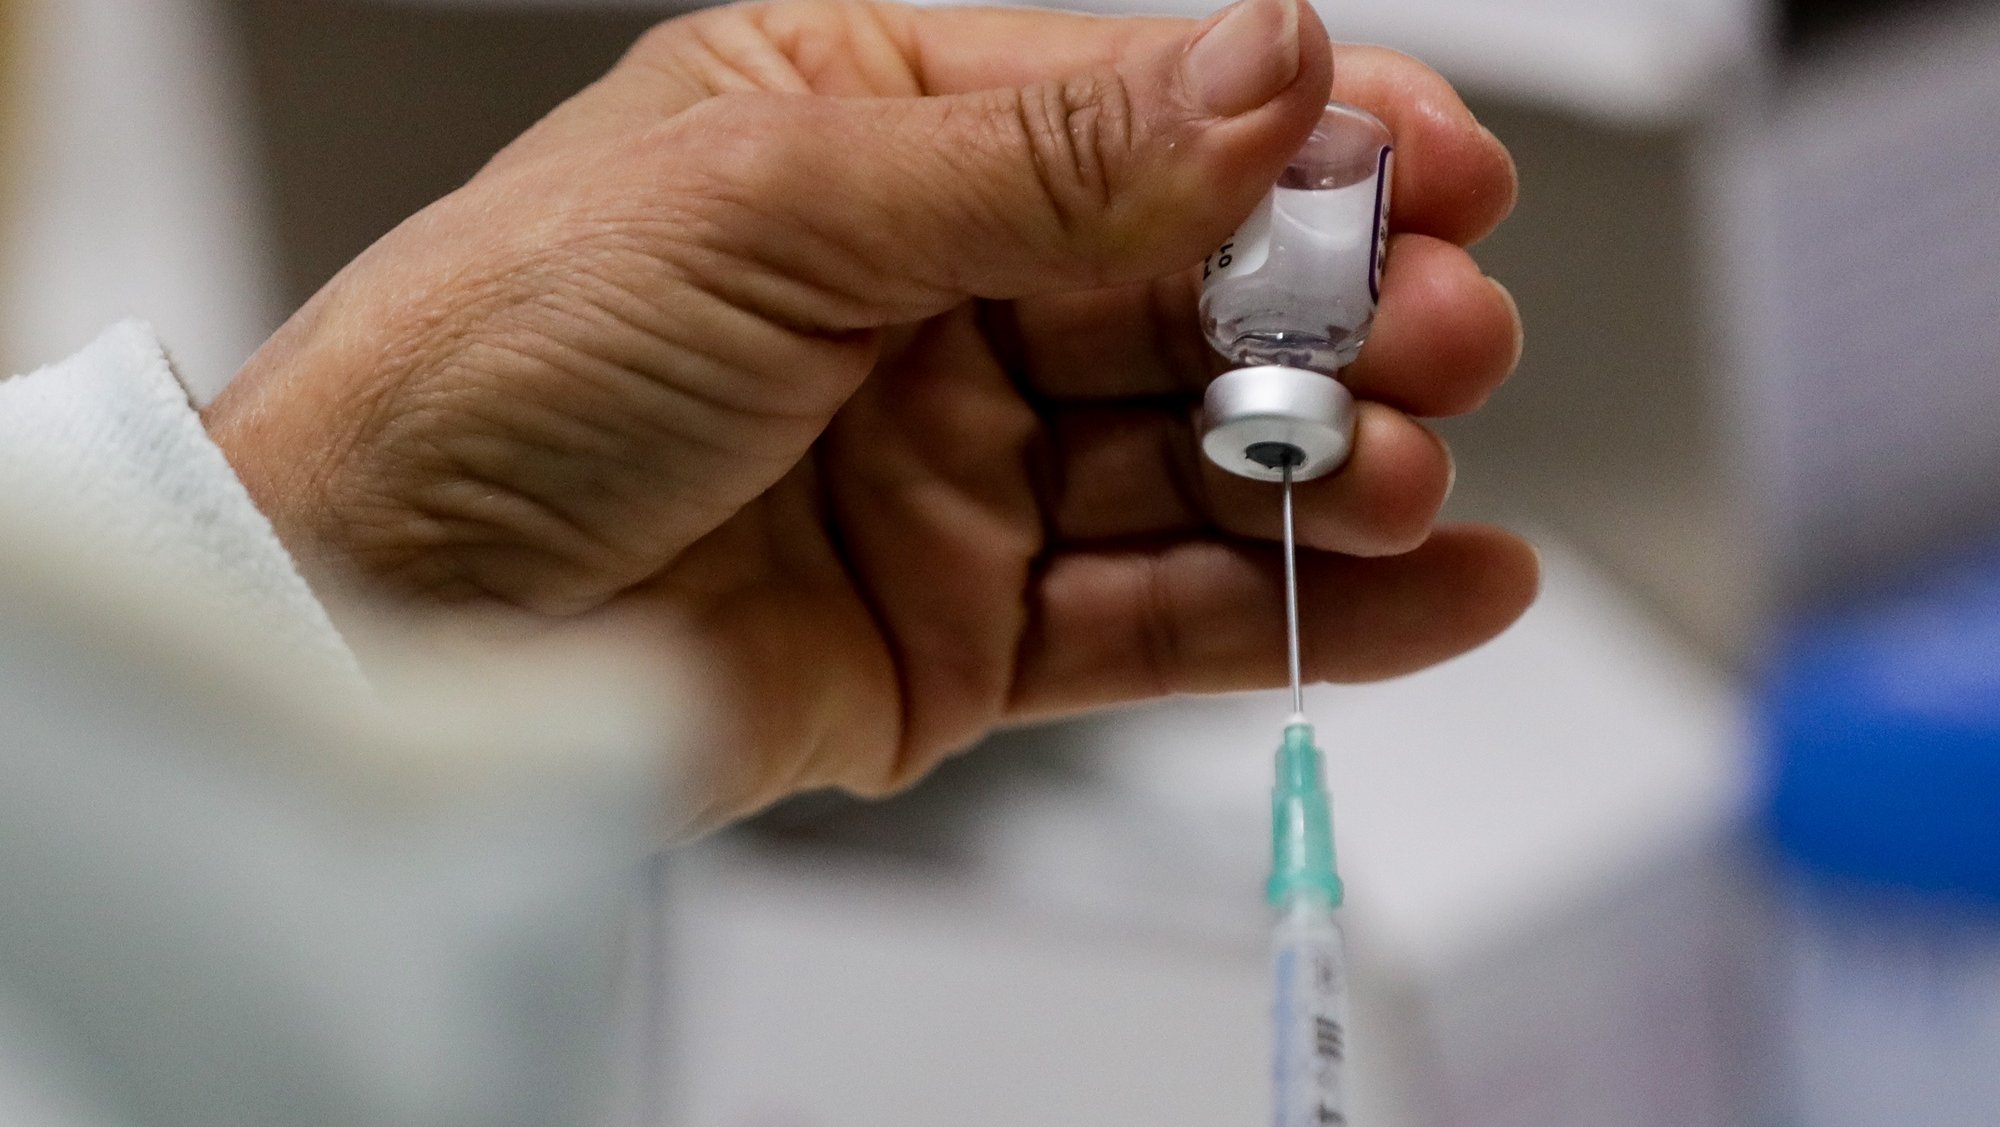 Uma enfermeira prepara doses de vacinas da Pfizer contra a covid-19 no centro de vacinação da Ajuda em Lisboa, 03 de dezembro de 2021. TIAGO PETINGA/LUSA